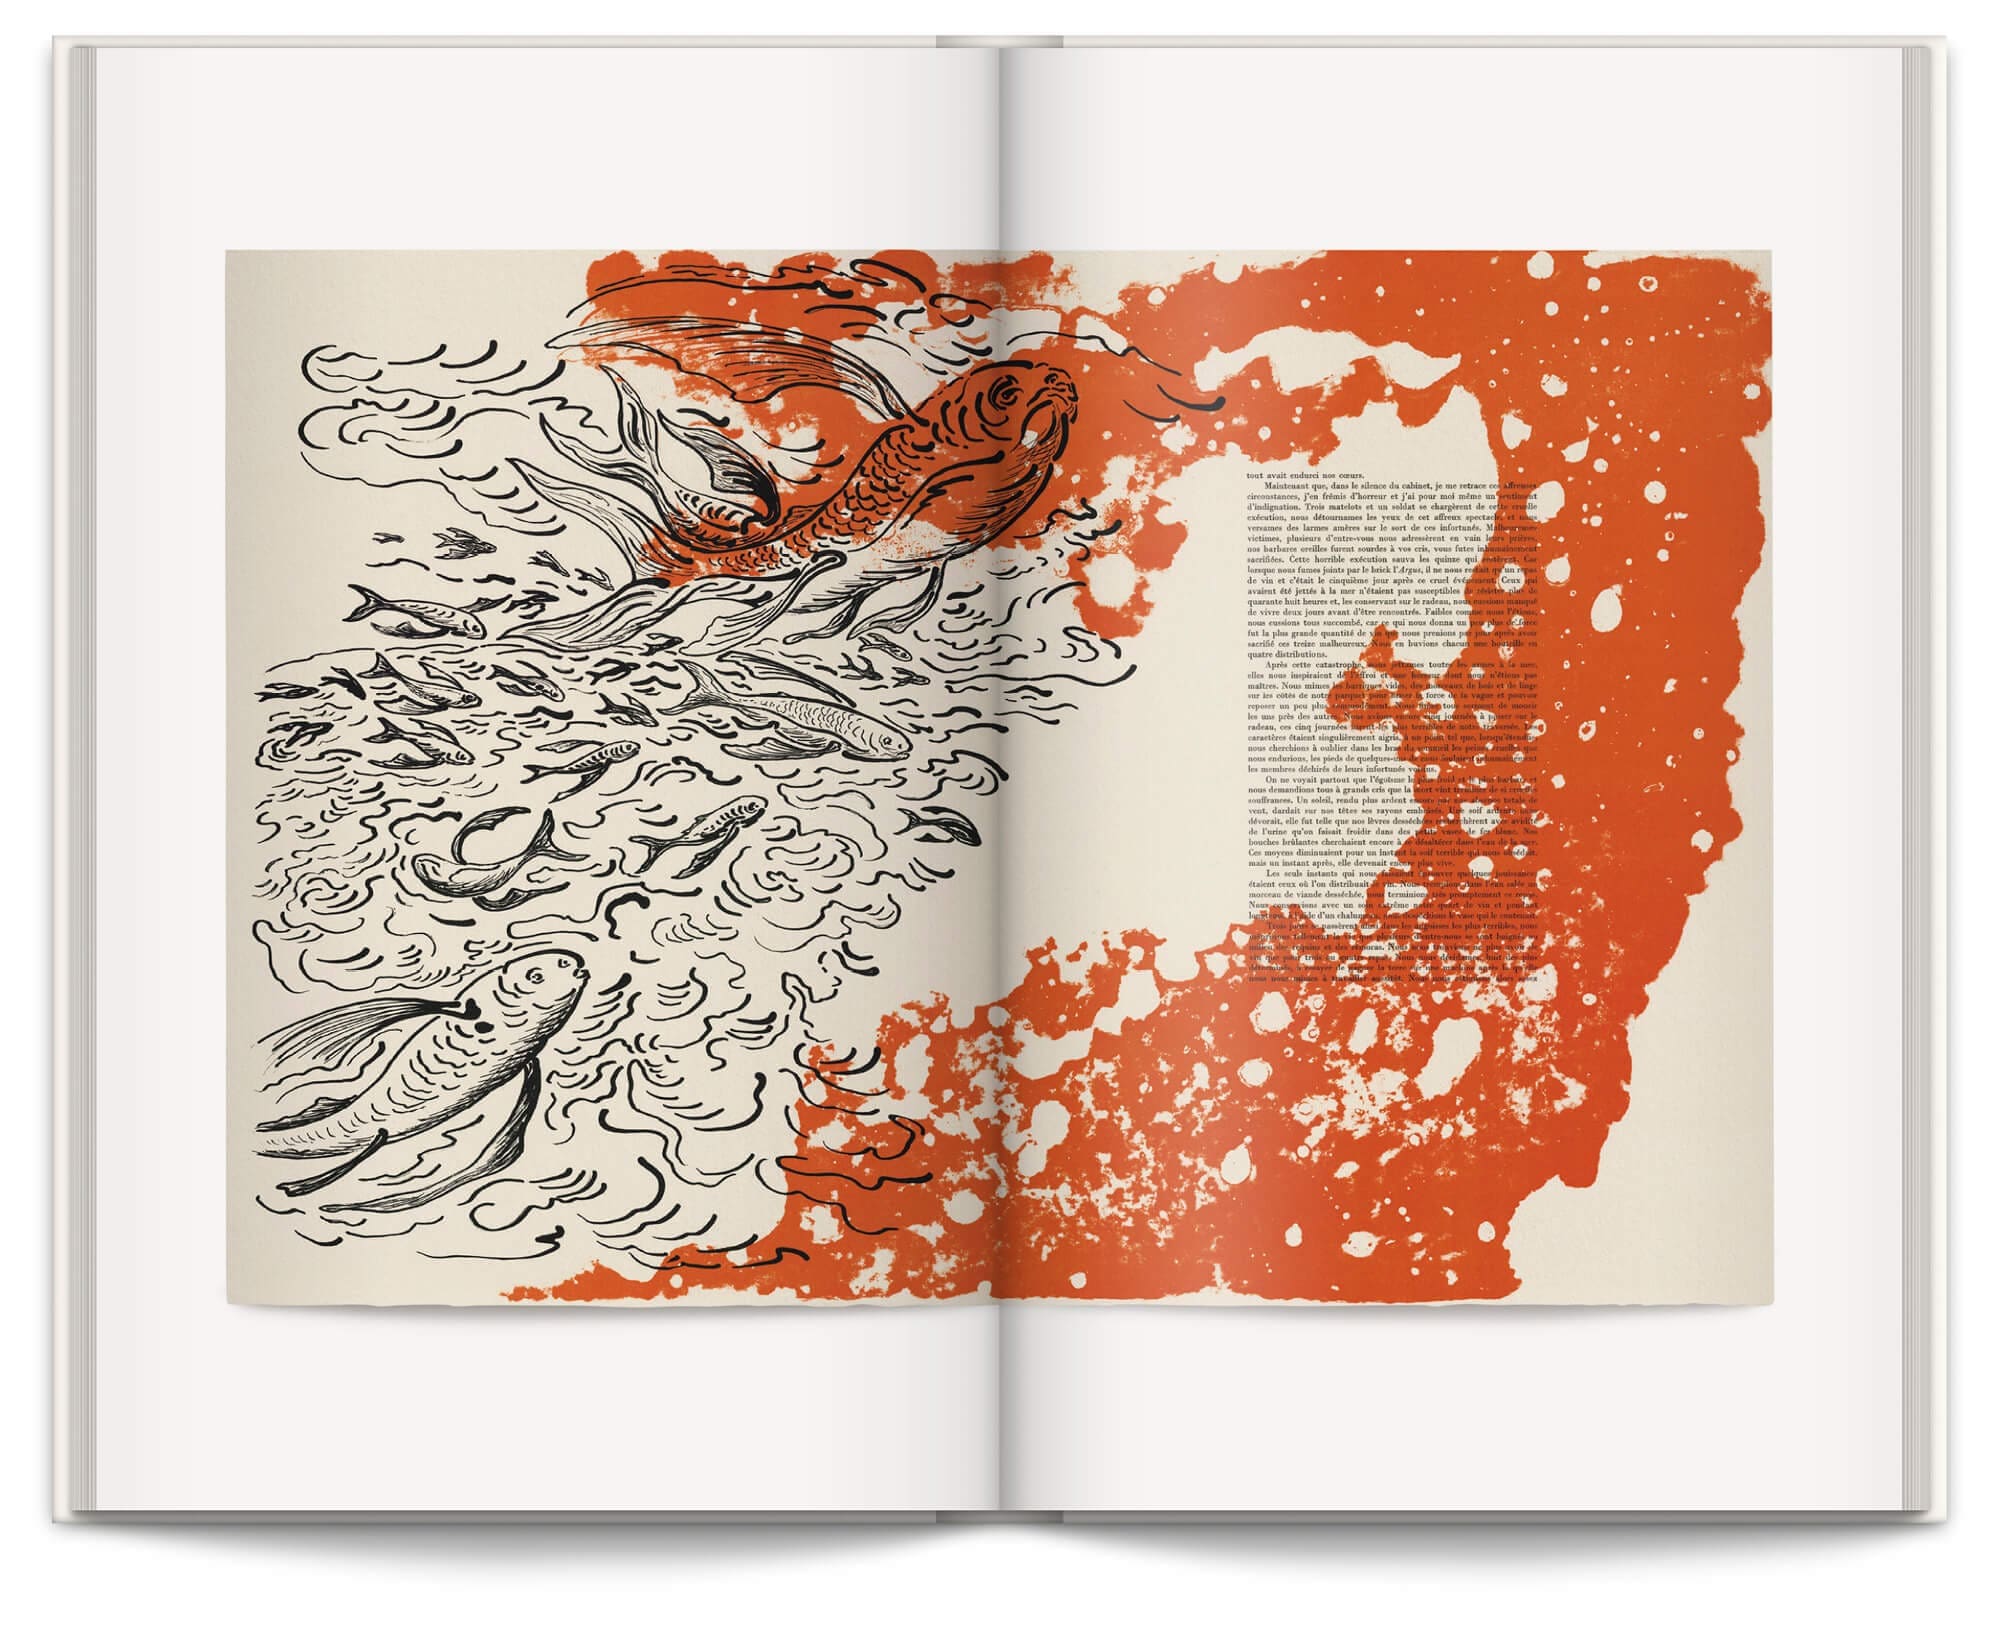 Livre "Jean-Jacques Sergent, Soldat de plomb", témoignages et sélection iconographique des plus belles réalisations de l'éditeur imprimeur typographe, design graphique Ich&Kar.